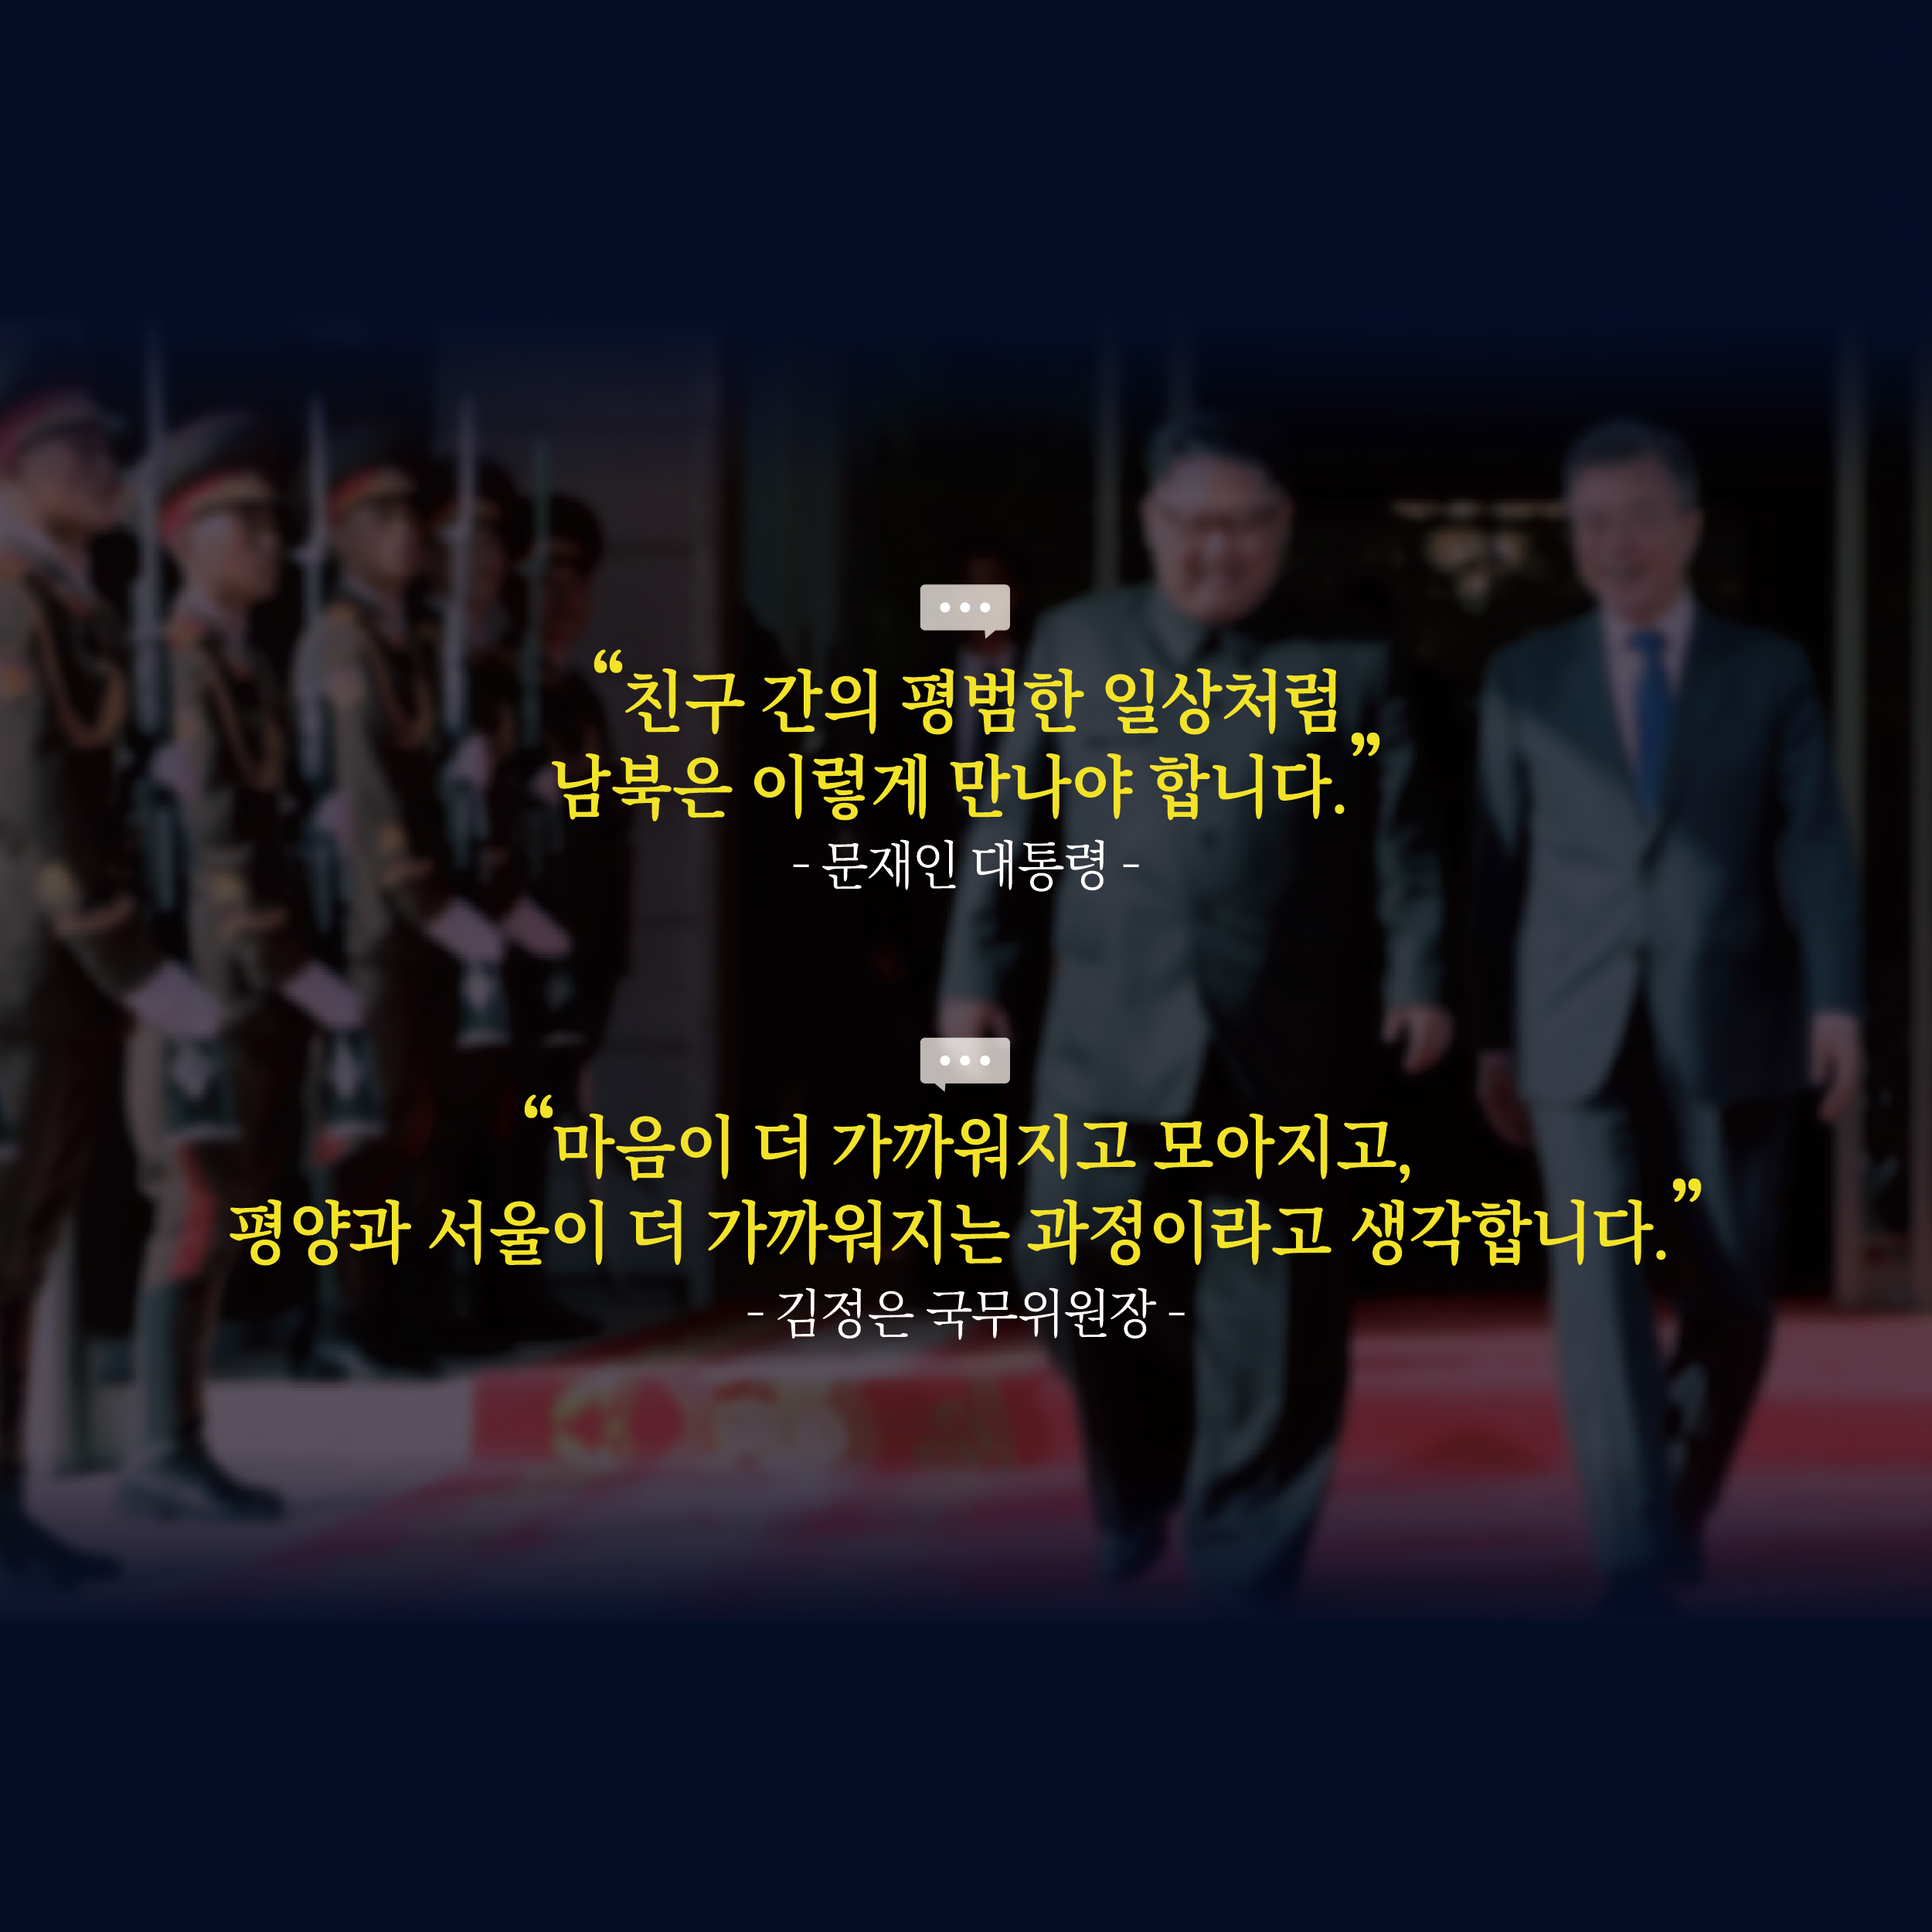 "친구 간의 평범한 일상처럼 남북은 이렇게 만나야 합니다."
-문재인 대통령-
"마음이 더 가까워지고 모아지고, 평양과 서울이 더 가까워지는 과정이라고 생각합니다."
-김정은 국무위원장-